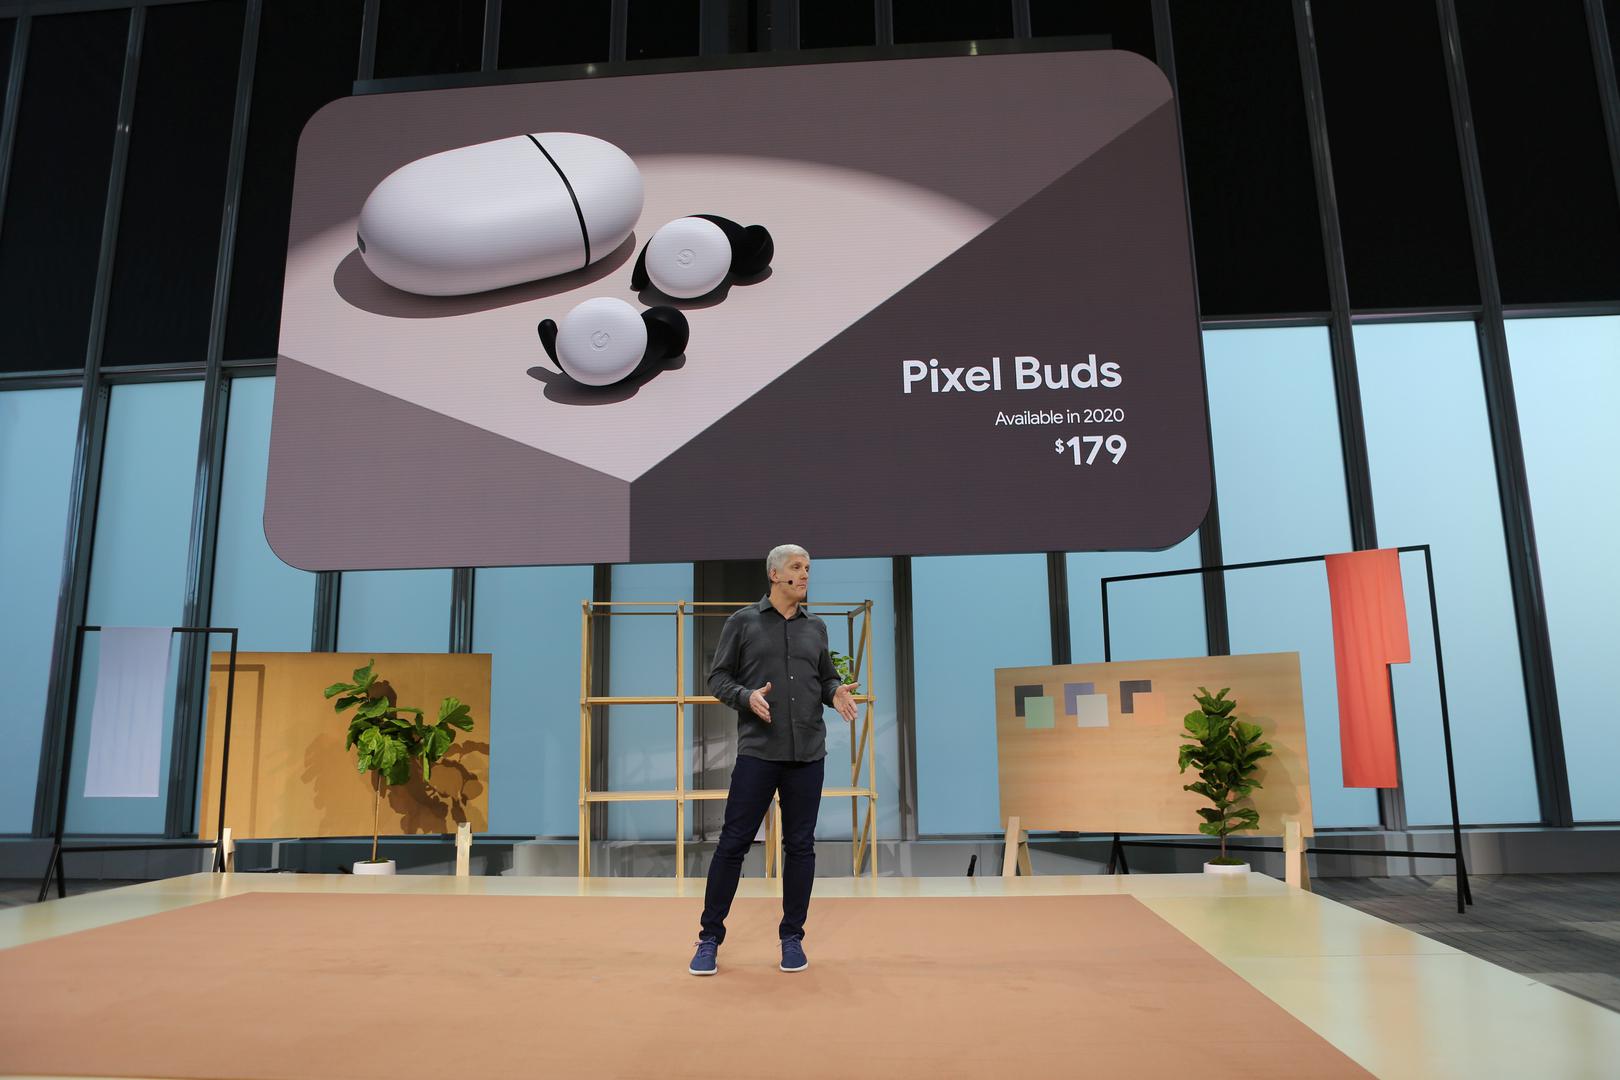 Uz mobitele Google je predstavio i nove slušalice Pixel Buds koje će po osnovnoj cijeni od 179 dolara biti dostupne u proljeće 2020. godine.